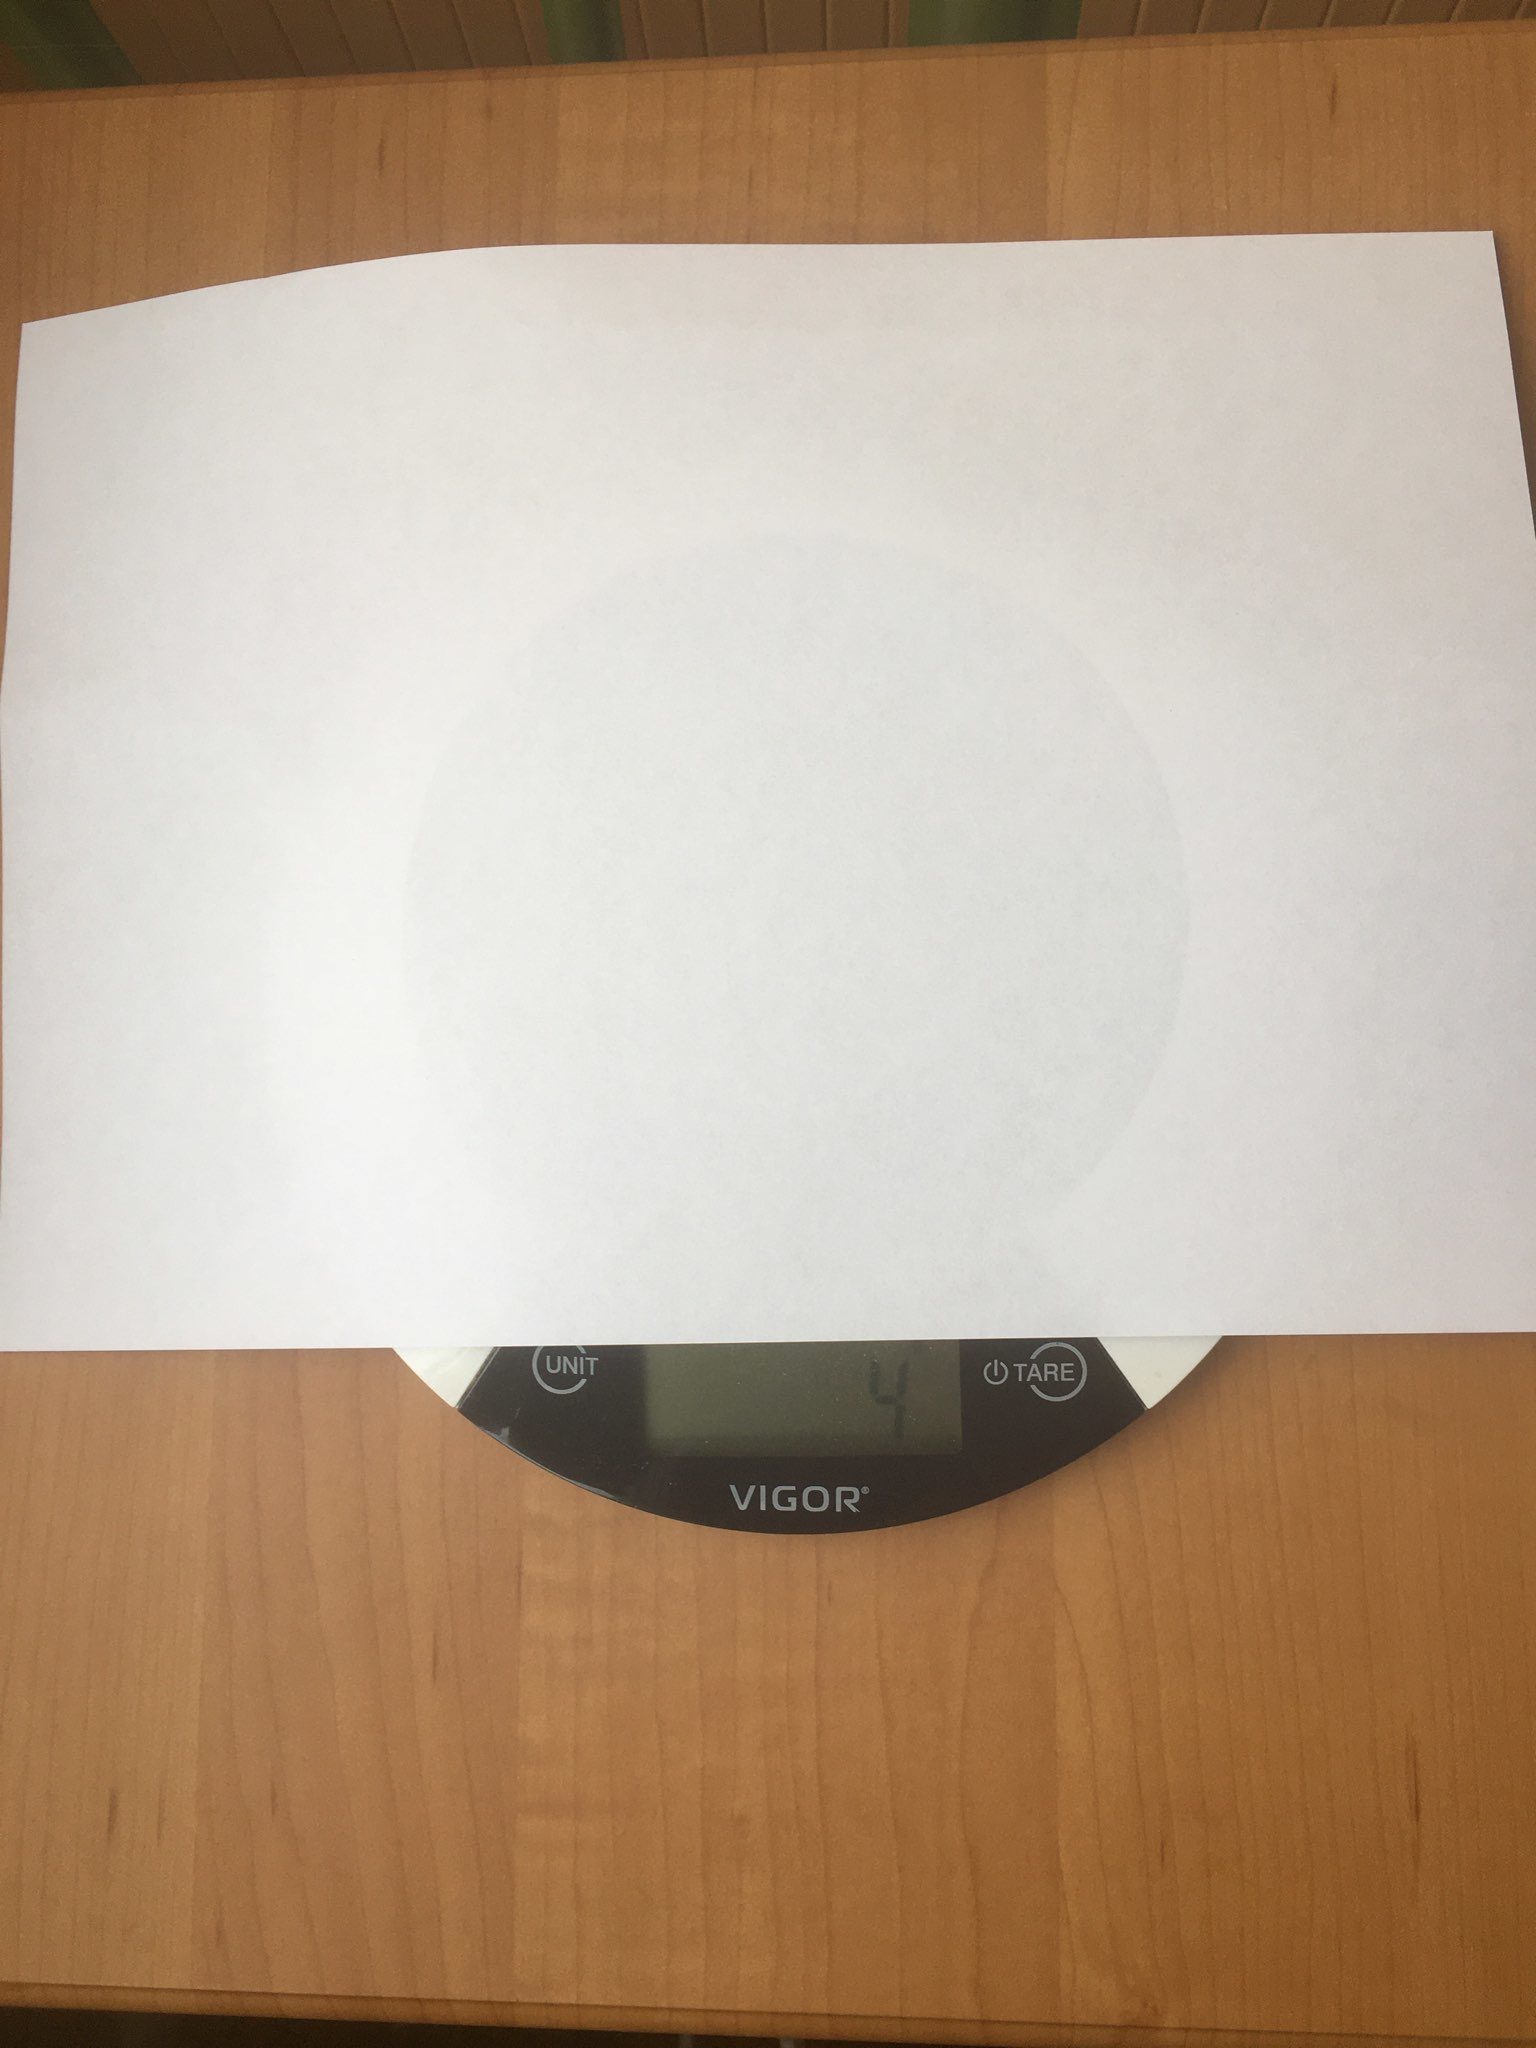 Bir parça beyaz kağıdın ağırlığı ne kadardır?